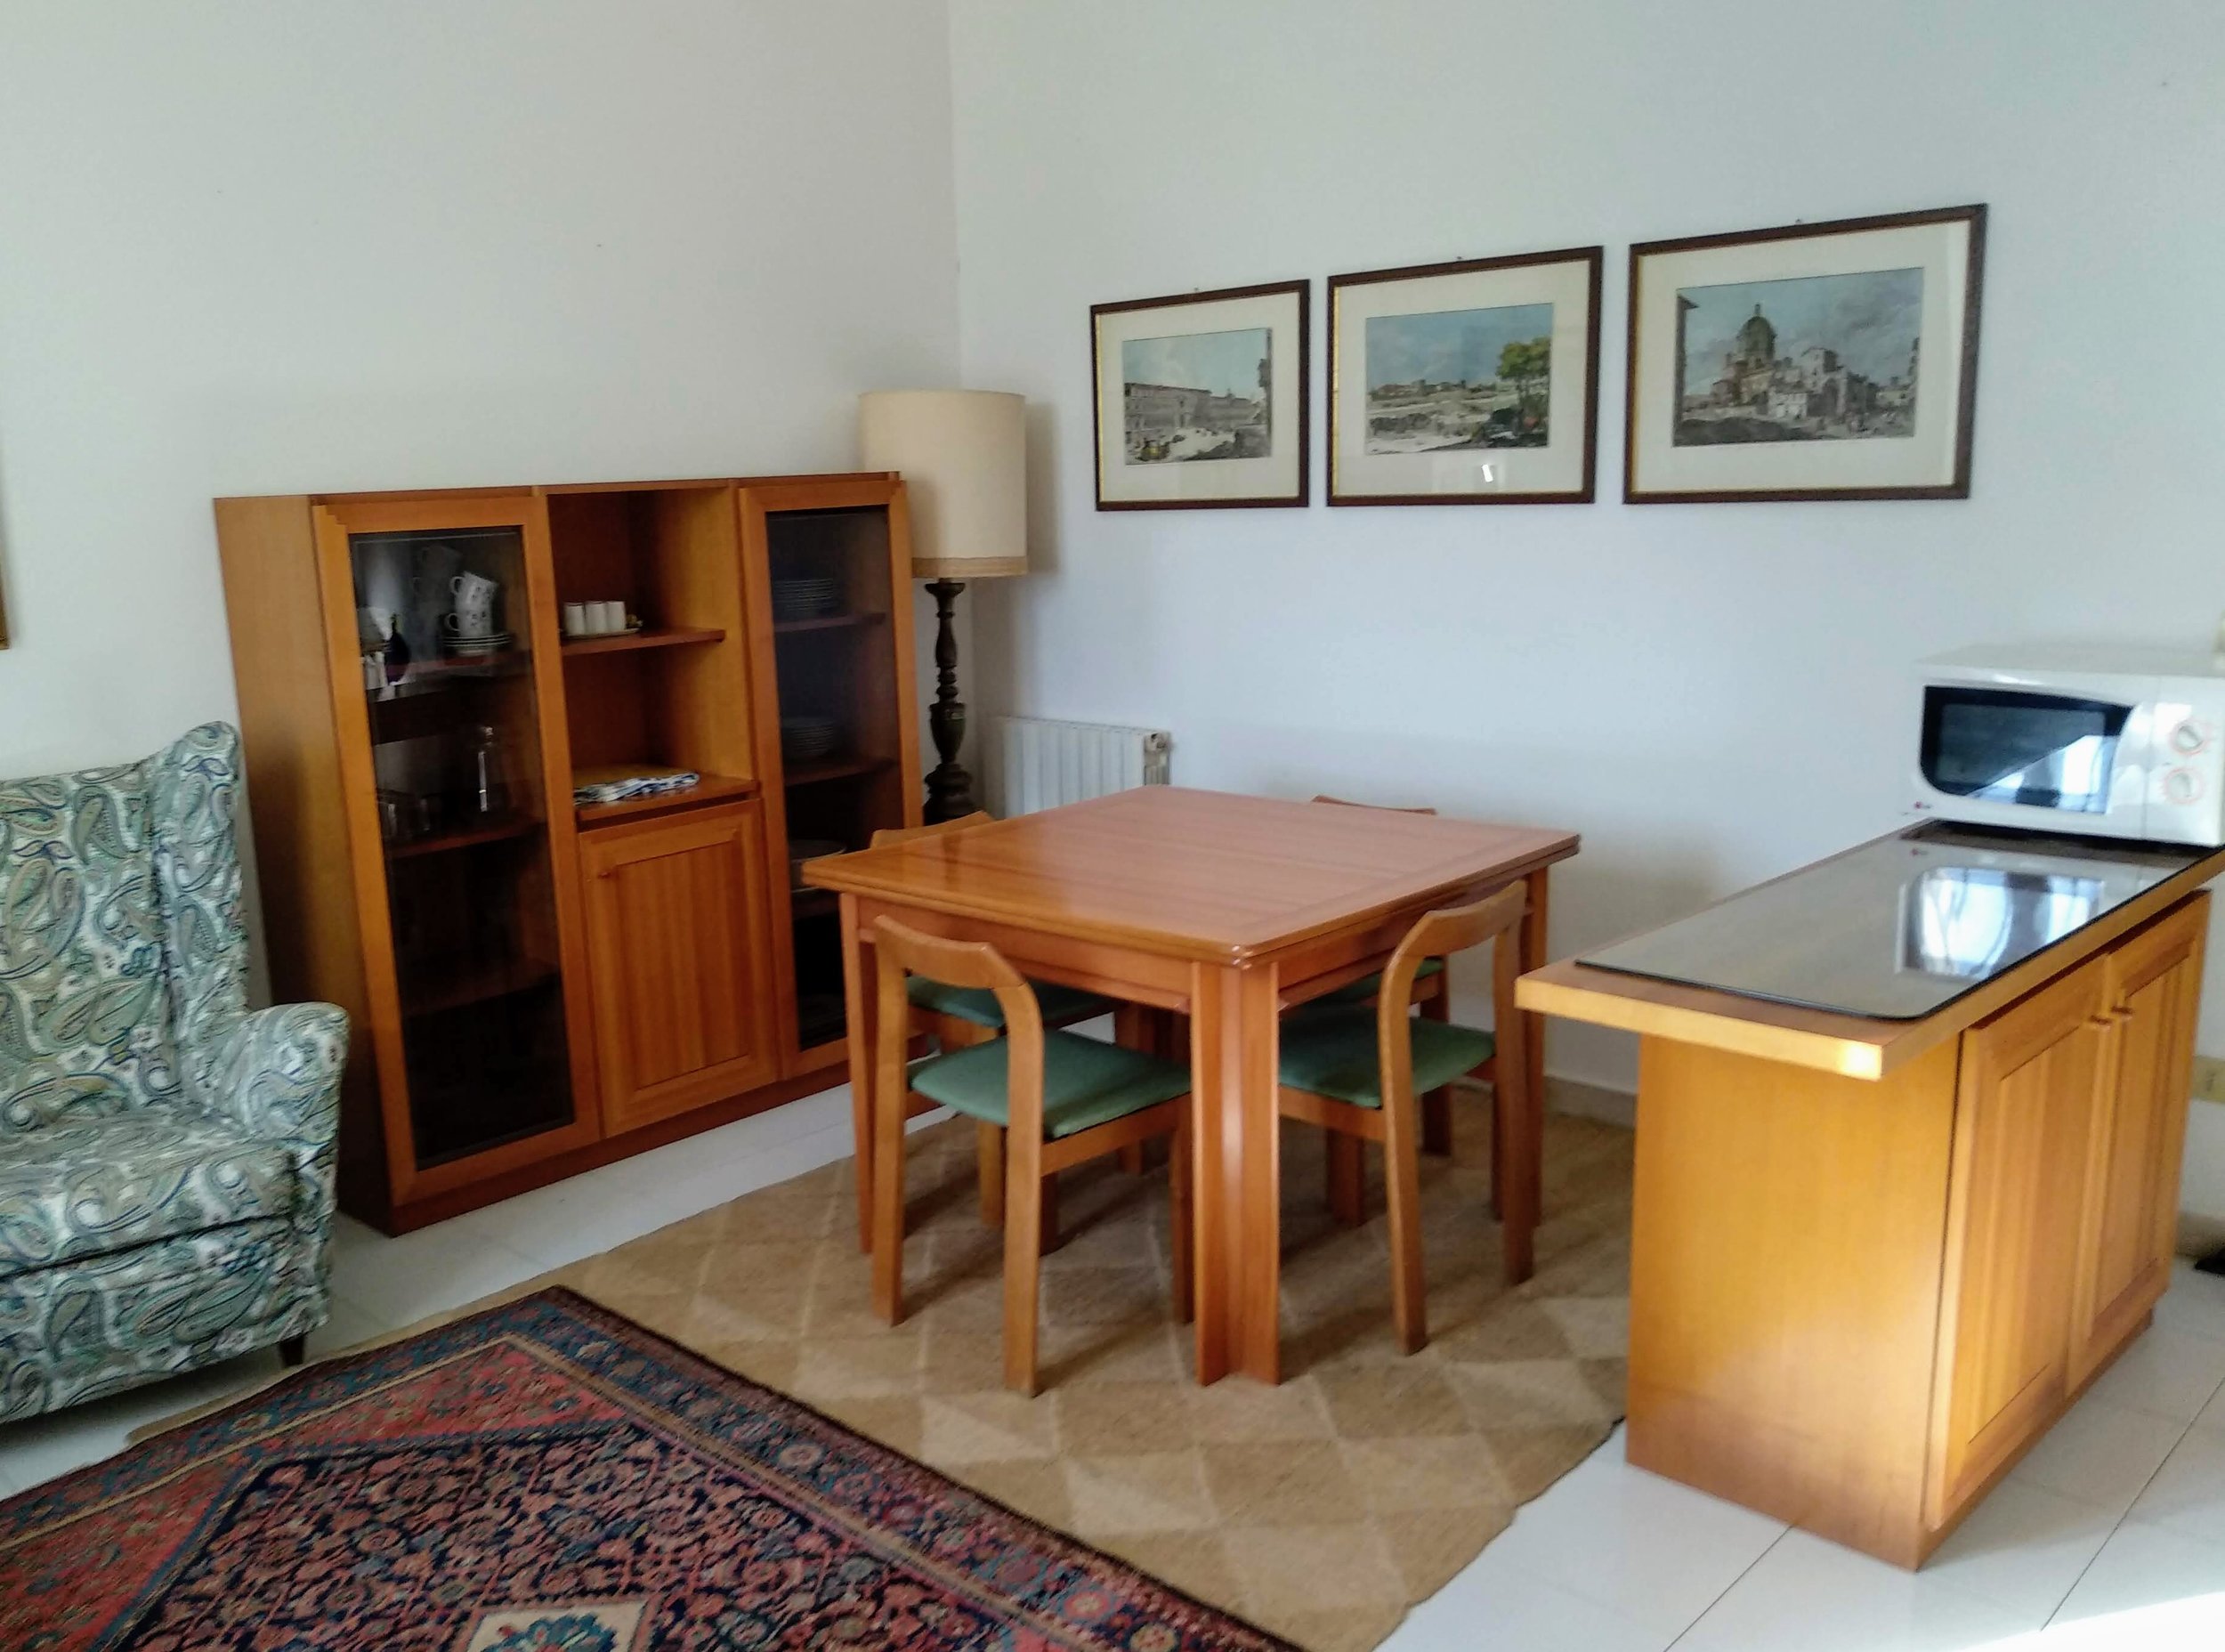 Appartamento - Soggiorno/Living Room